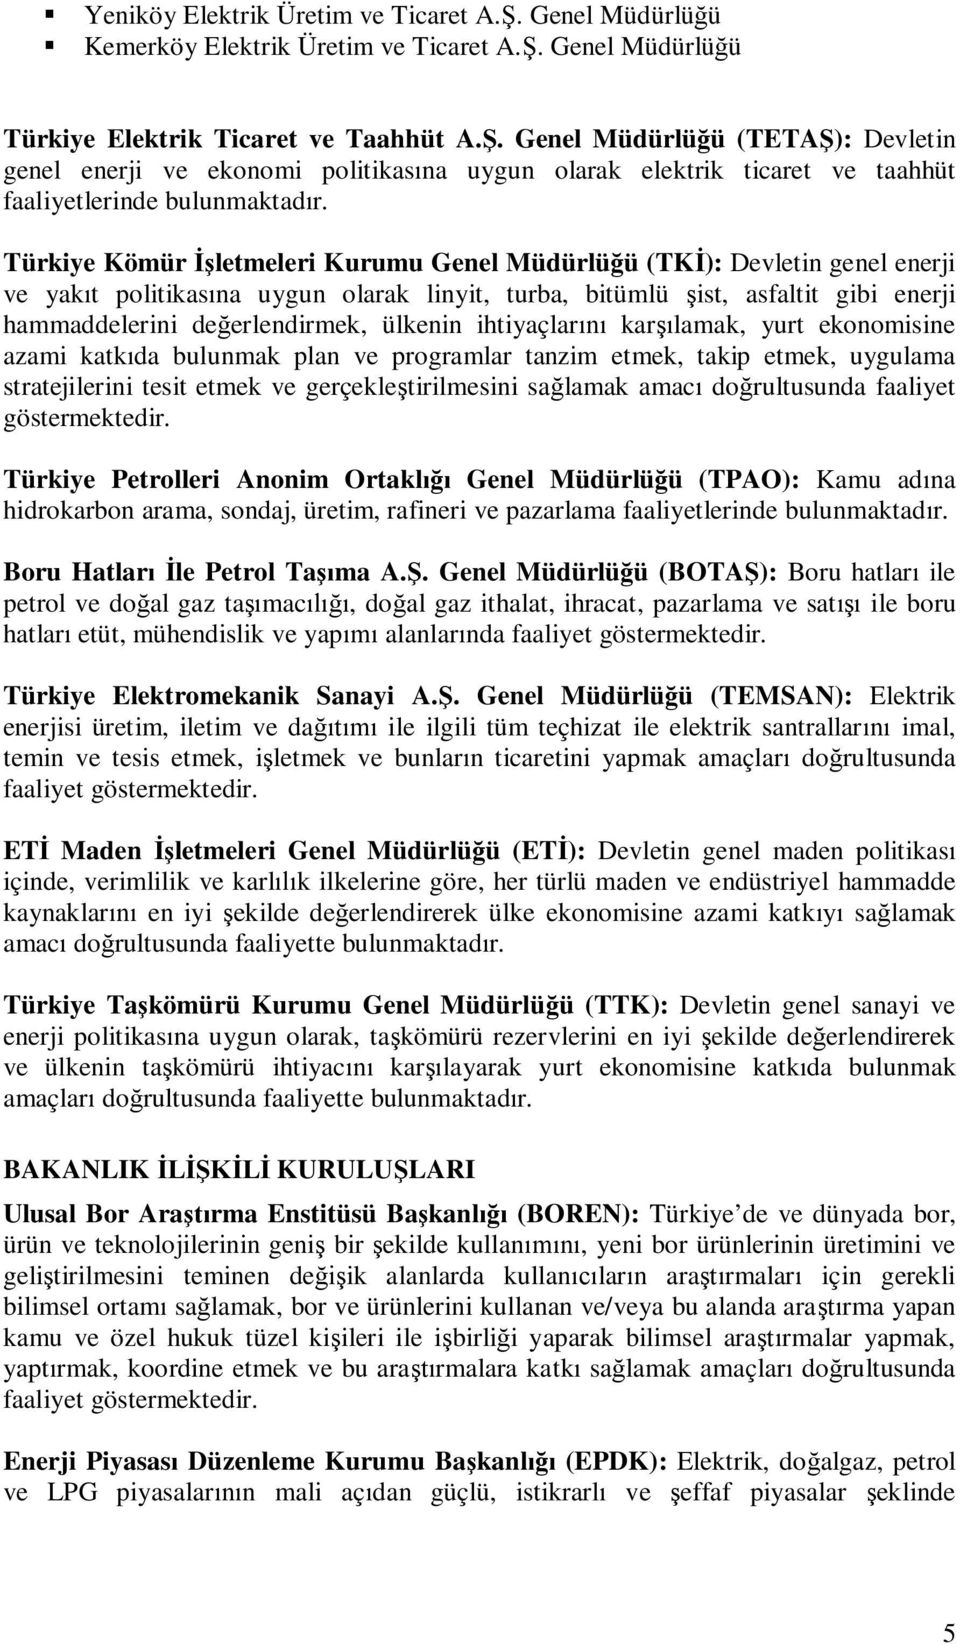 Türkiye Kömür letmeleri Kurumu Genel Müdürlüü (TK): Devletin genel enerji ve yakt politikasna uygun olarak linyit, turba, bitümlü ist, asfaltit gibi enerji hammaddelerini deerlendirmek, ülkenin